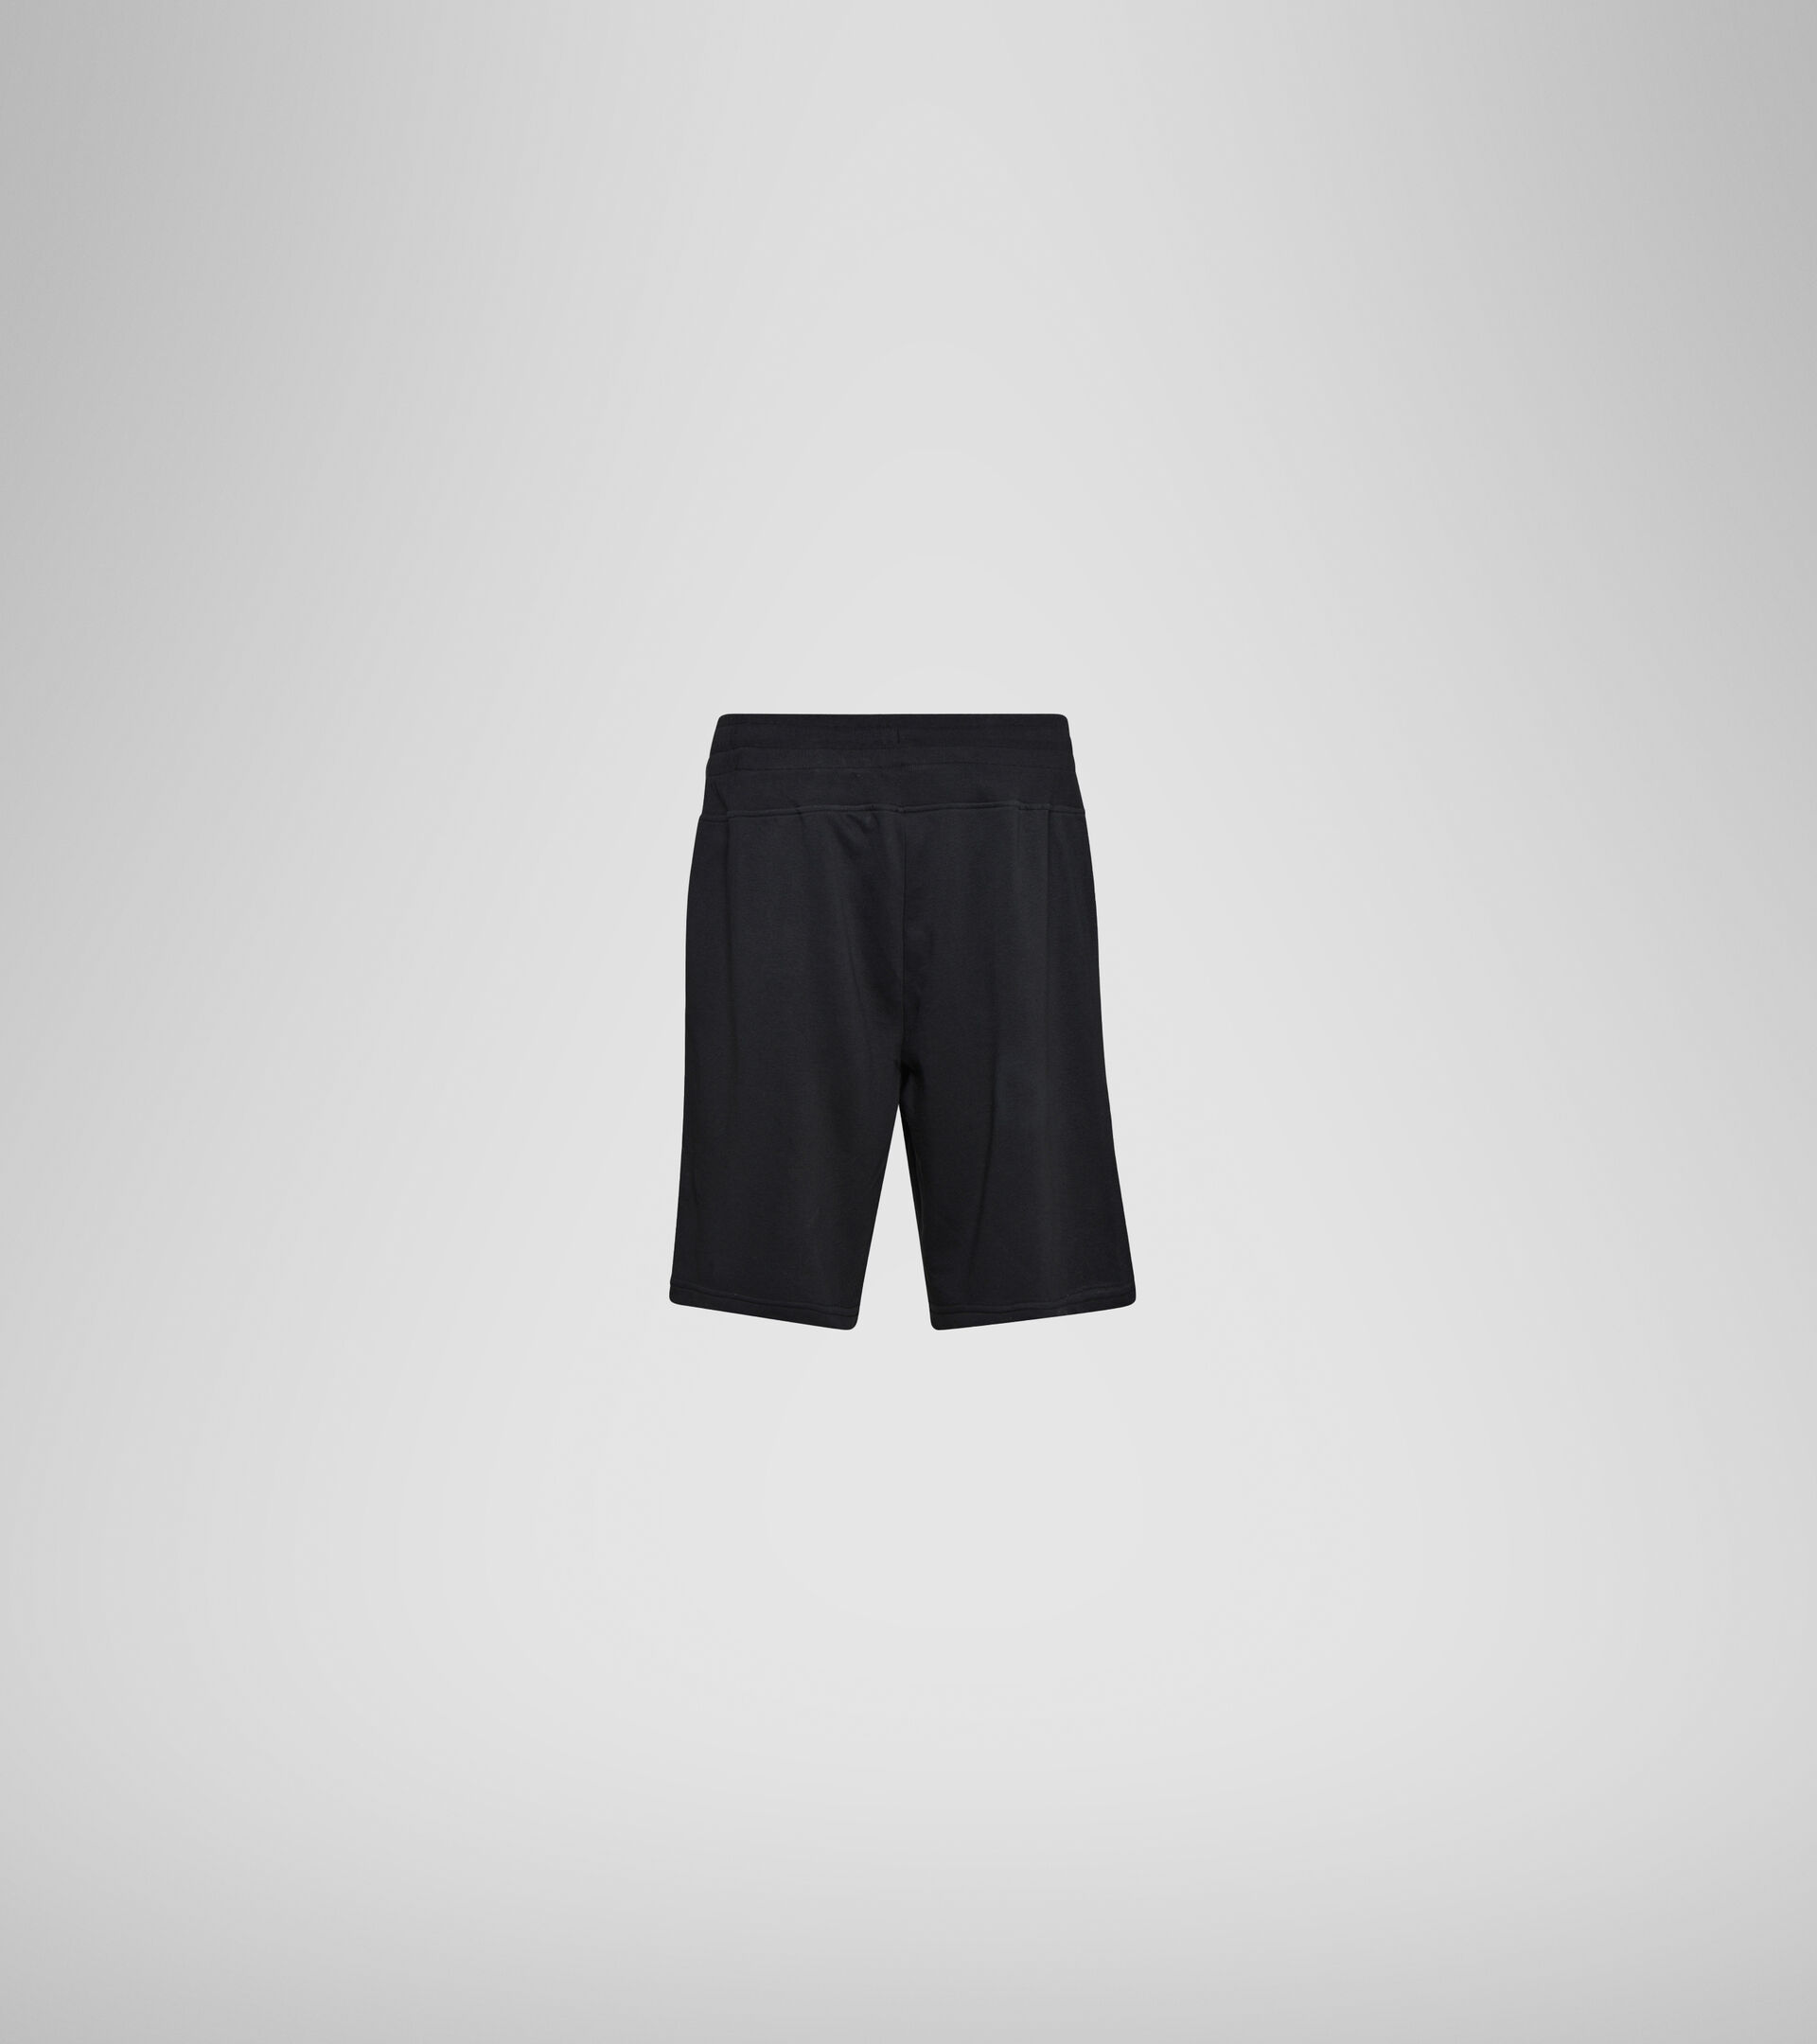 Bermuda shorts - Men BERMUDA DIADORA CLUB BLACK - Diadora